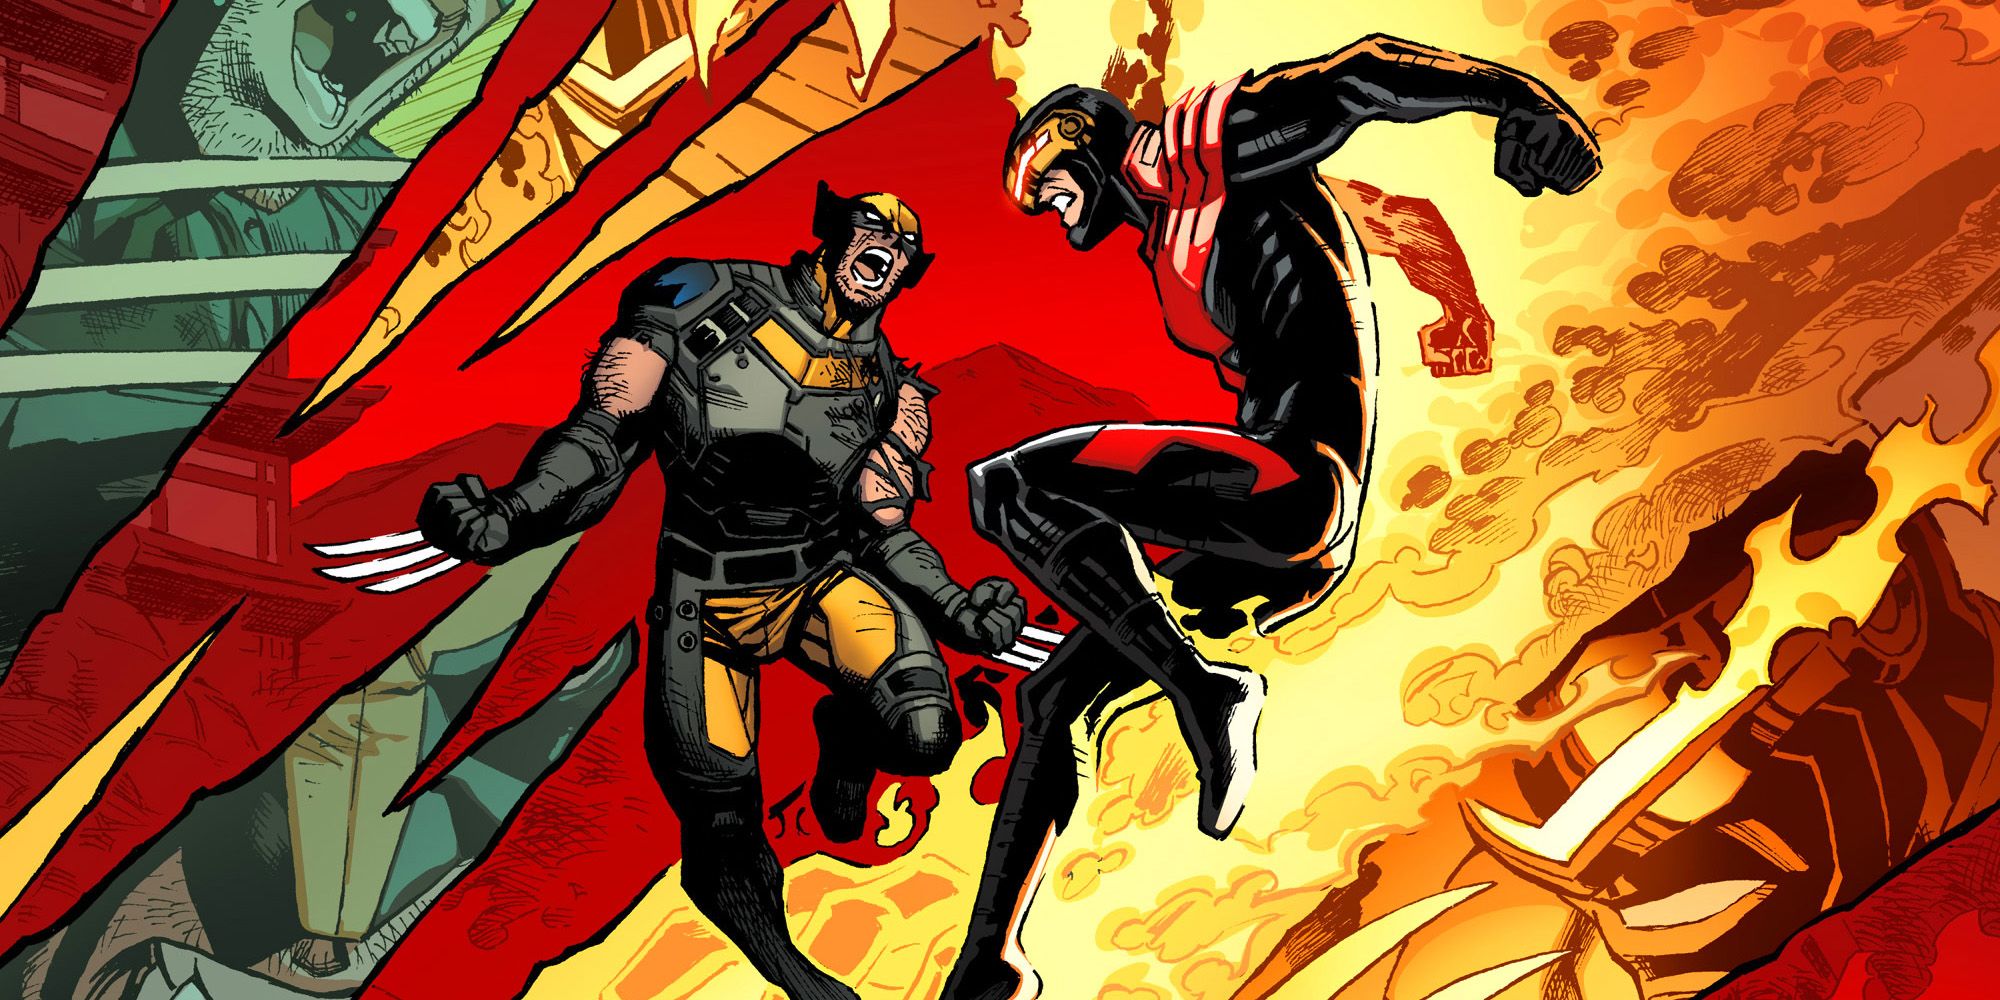 Cyclops vs Wolverine